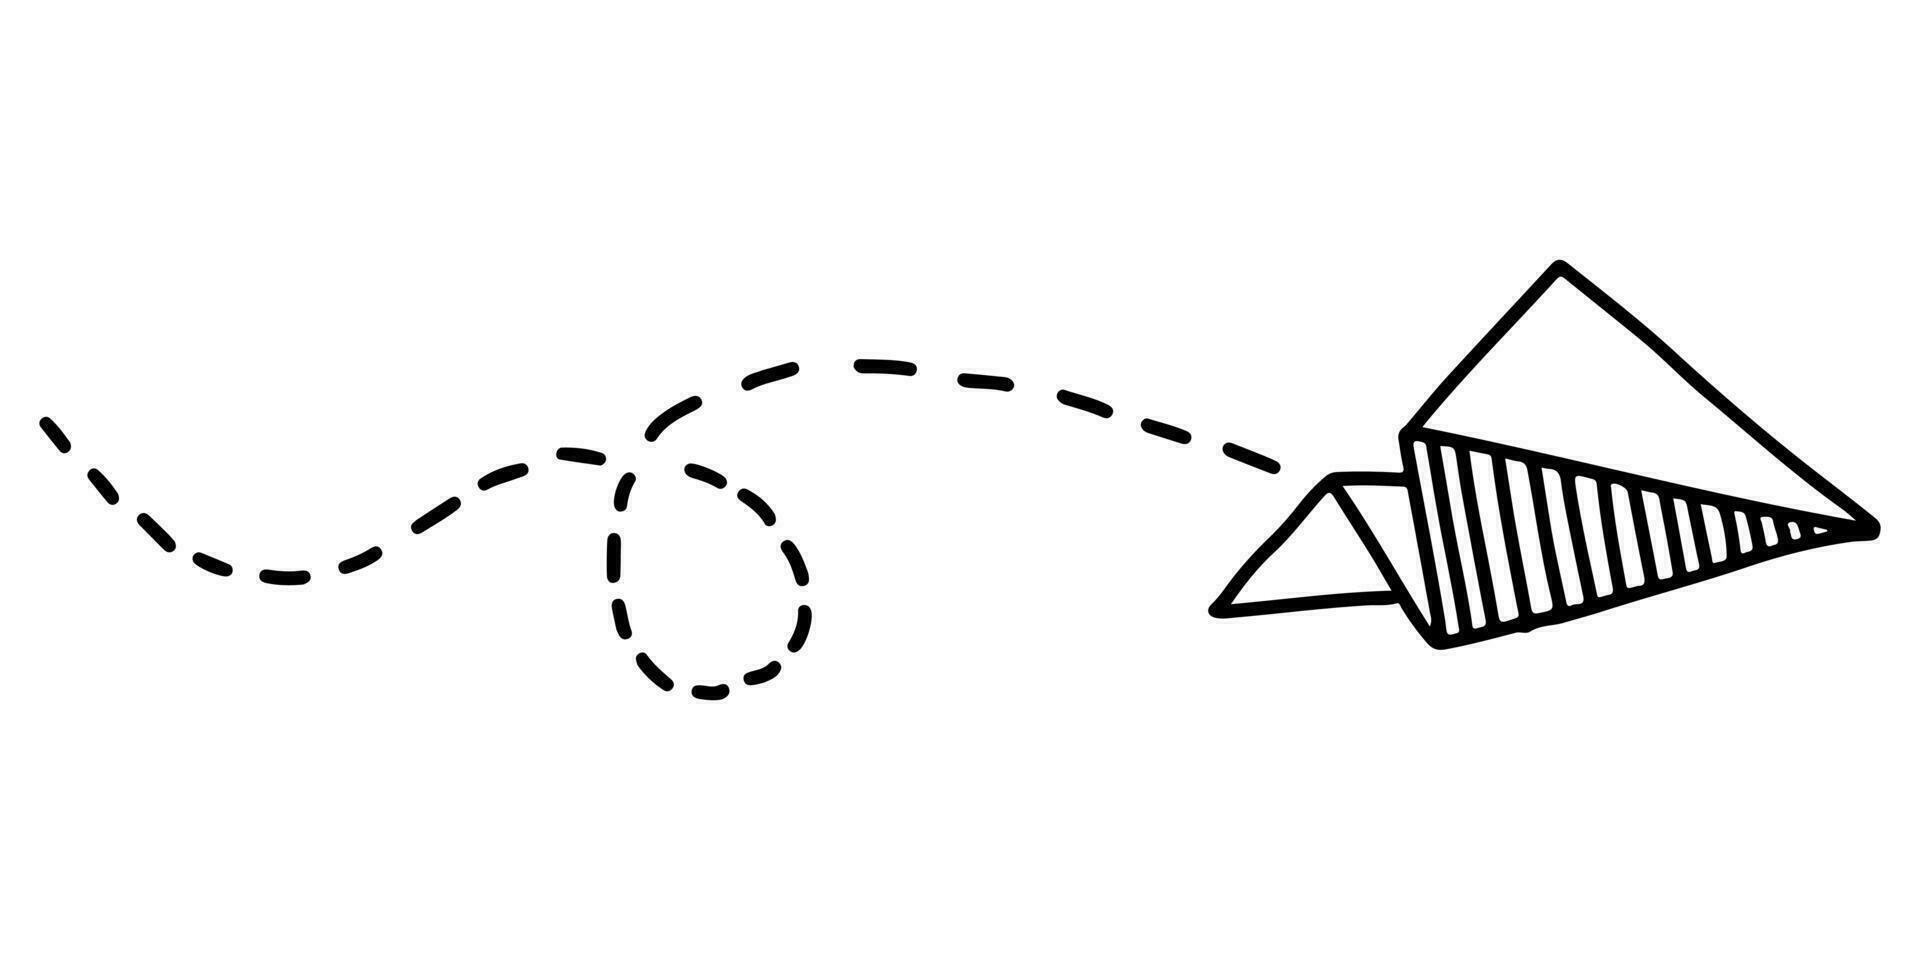 griffonnage esquisser style de papier avion icône vecteur illustration pour concept conception.